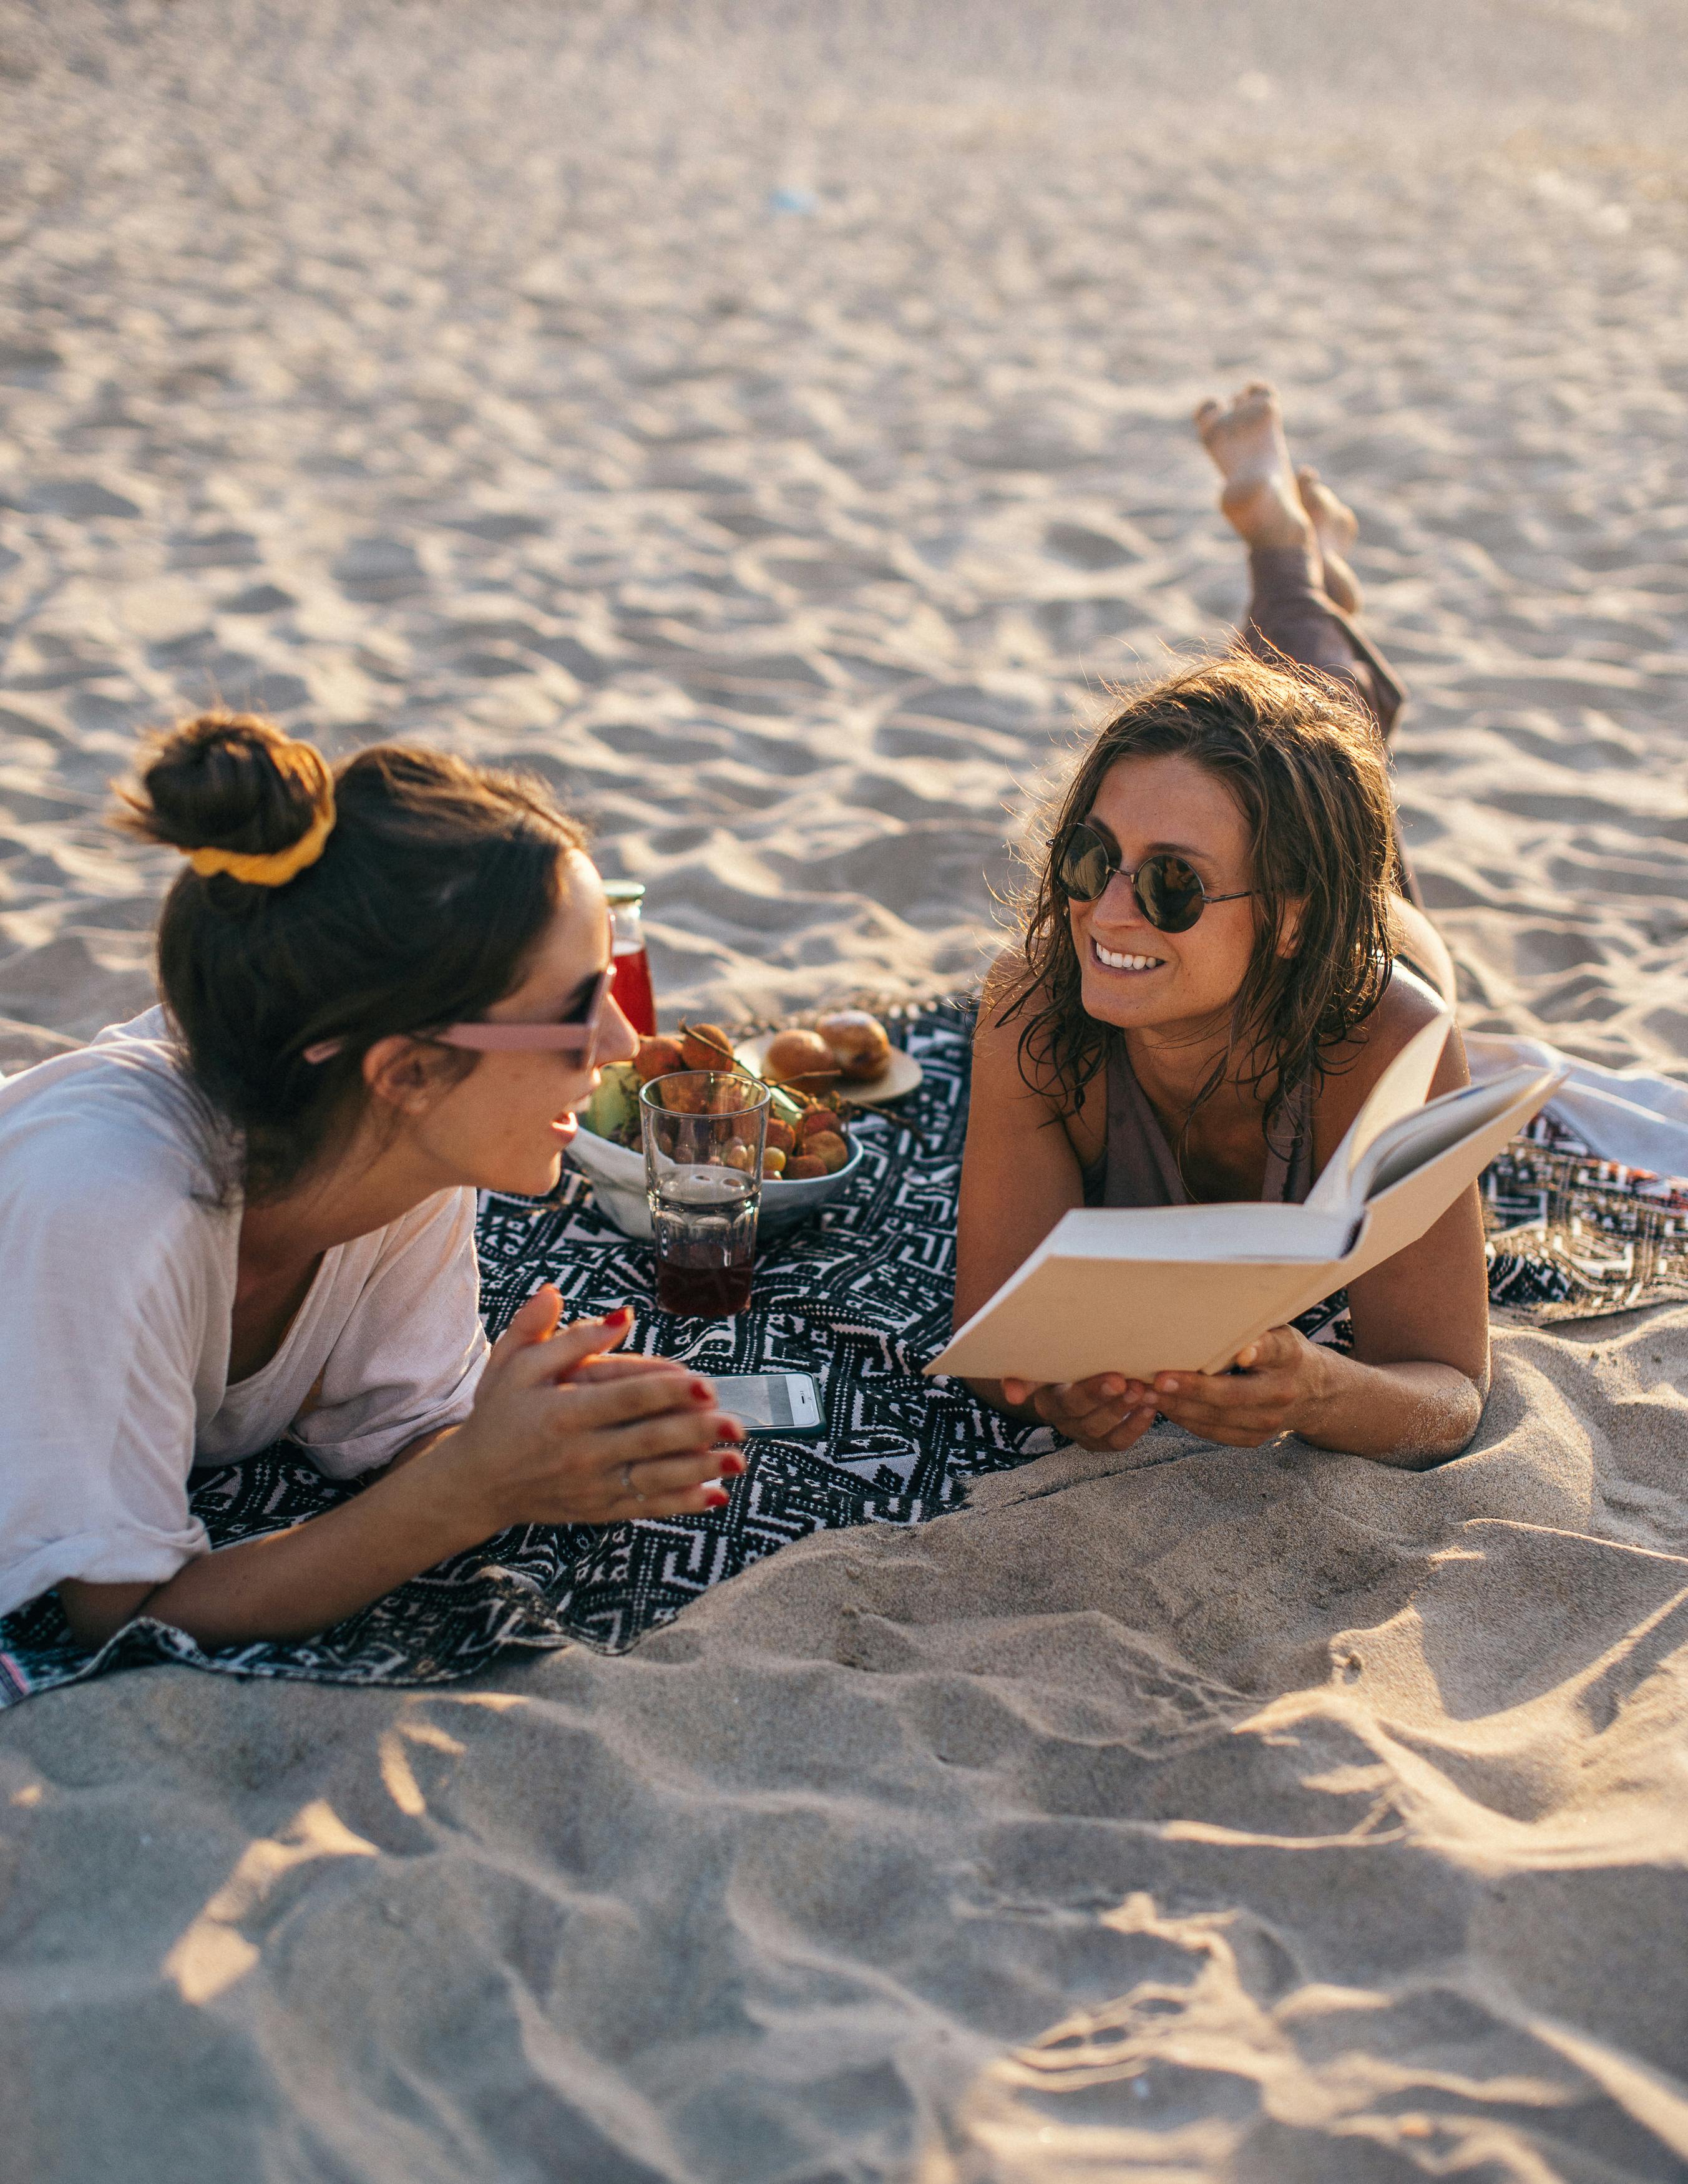 Beste Freunde unterhalten sich am Strand | Quelle: Anna Tarazevich auf Pexels